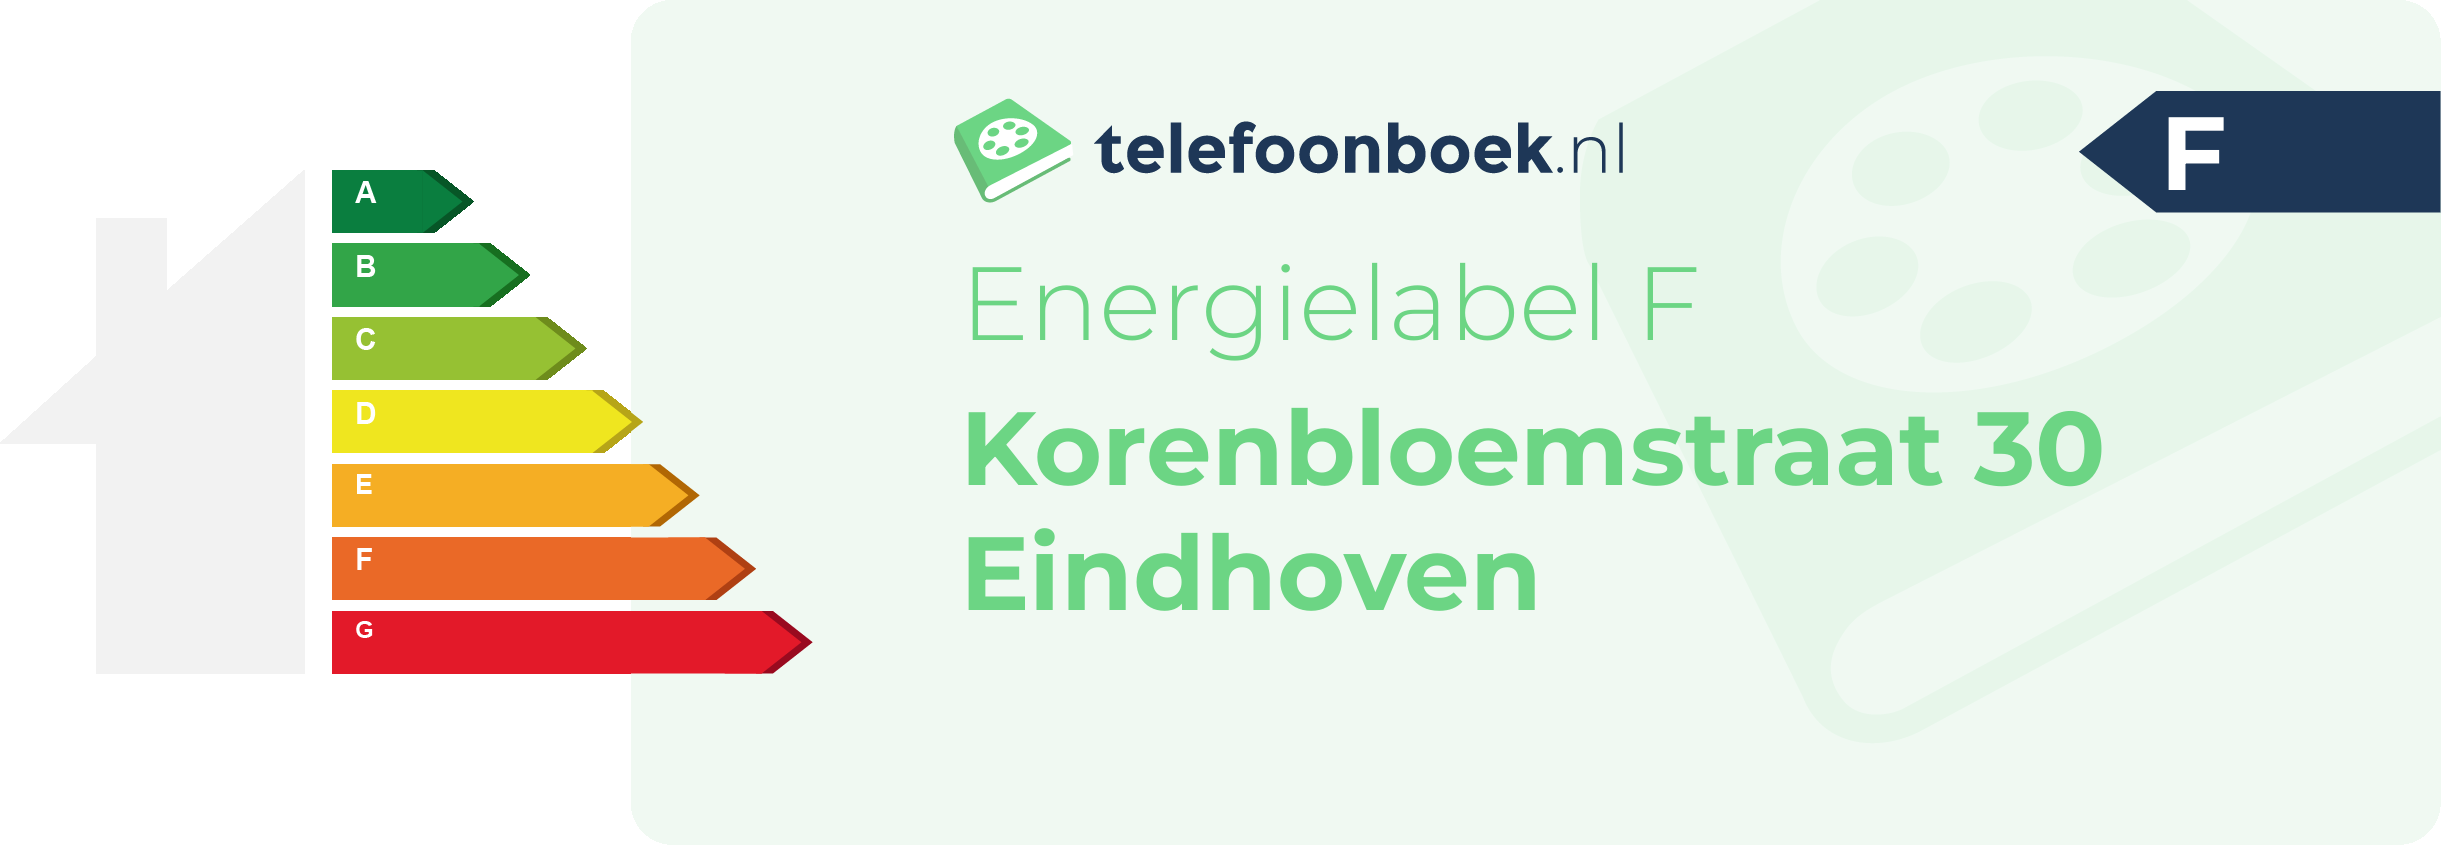 Energielabel Korenbloemstraat 30 Eindhoven